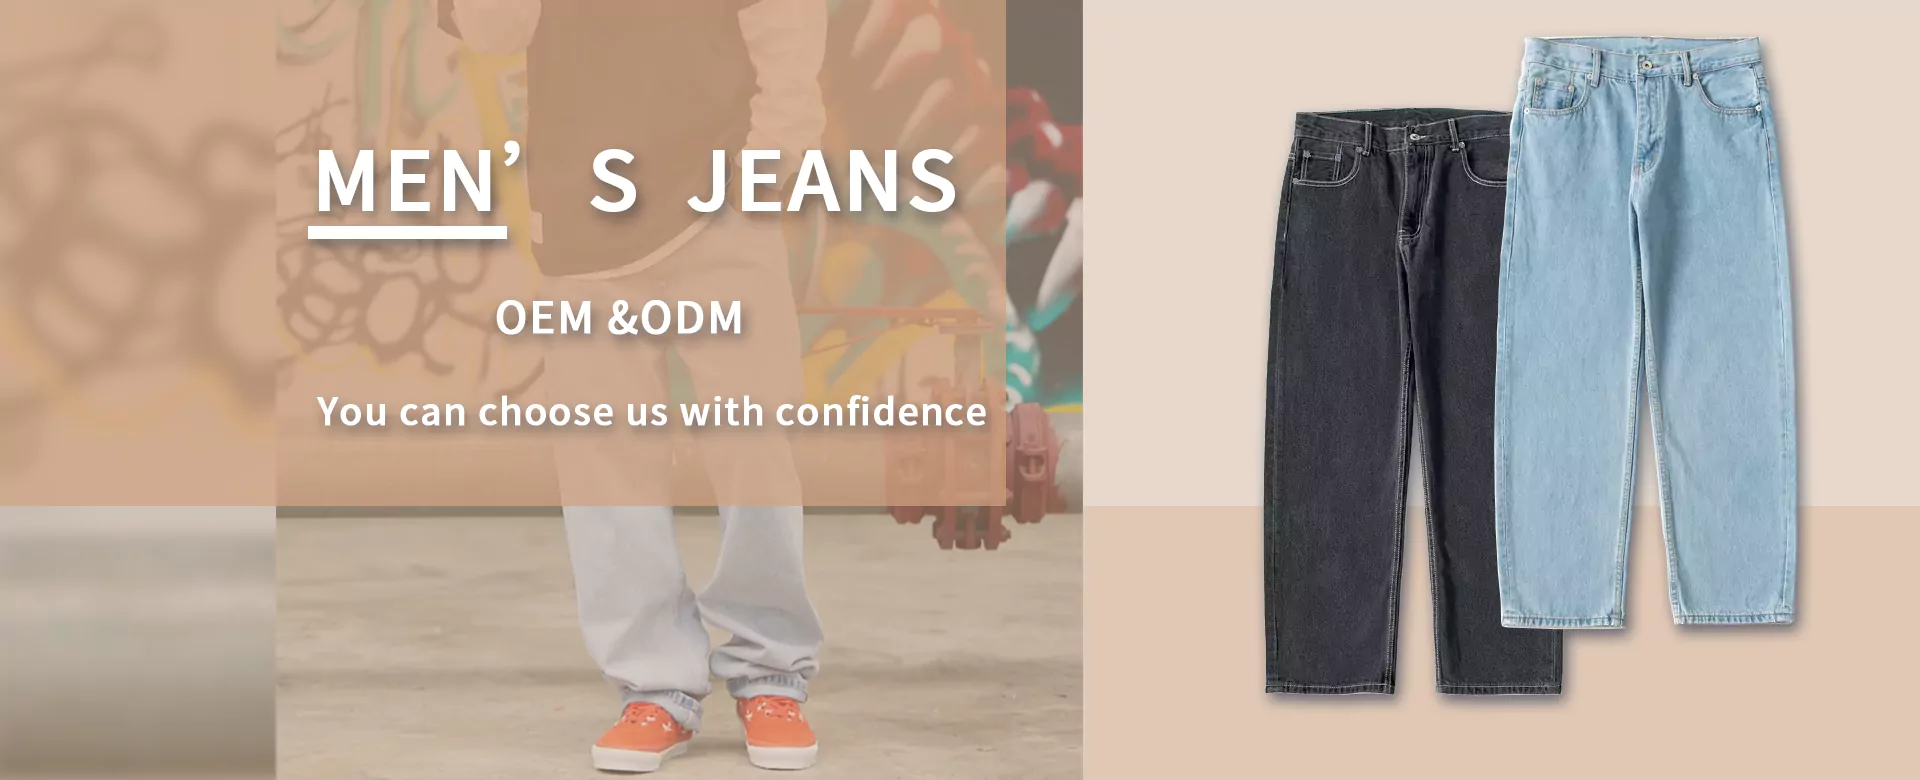 denim jeans supplier